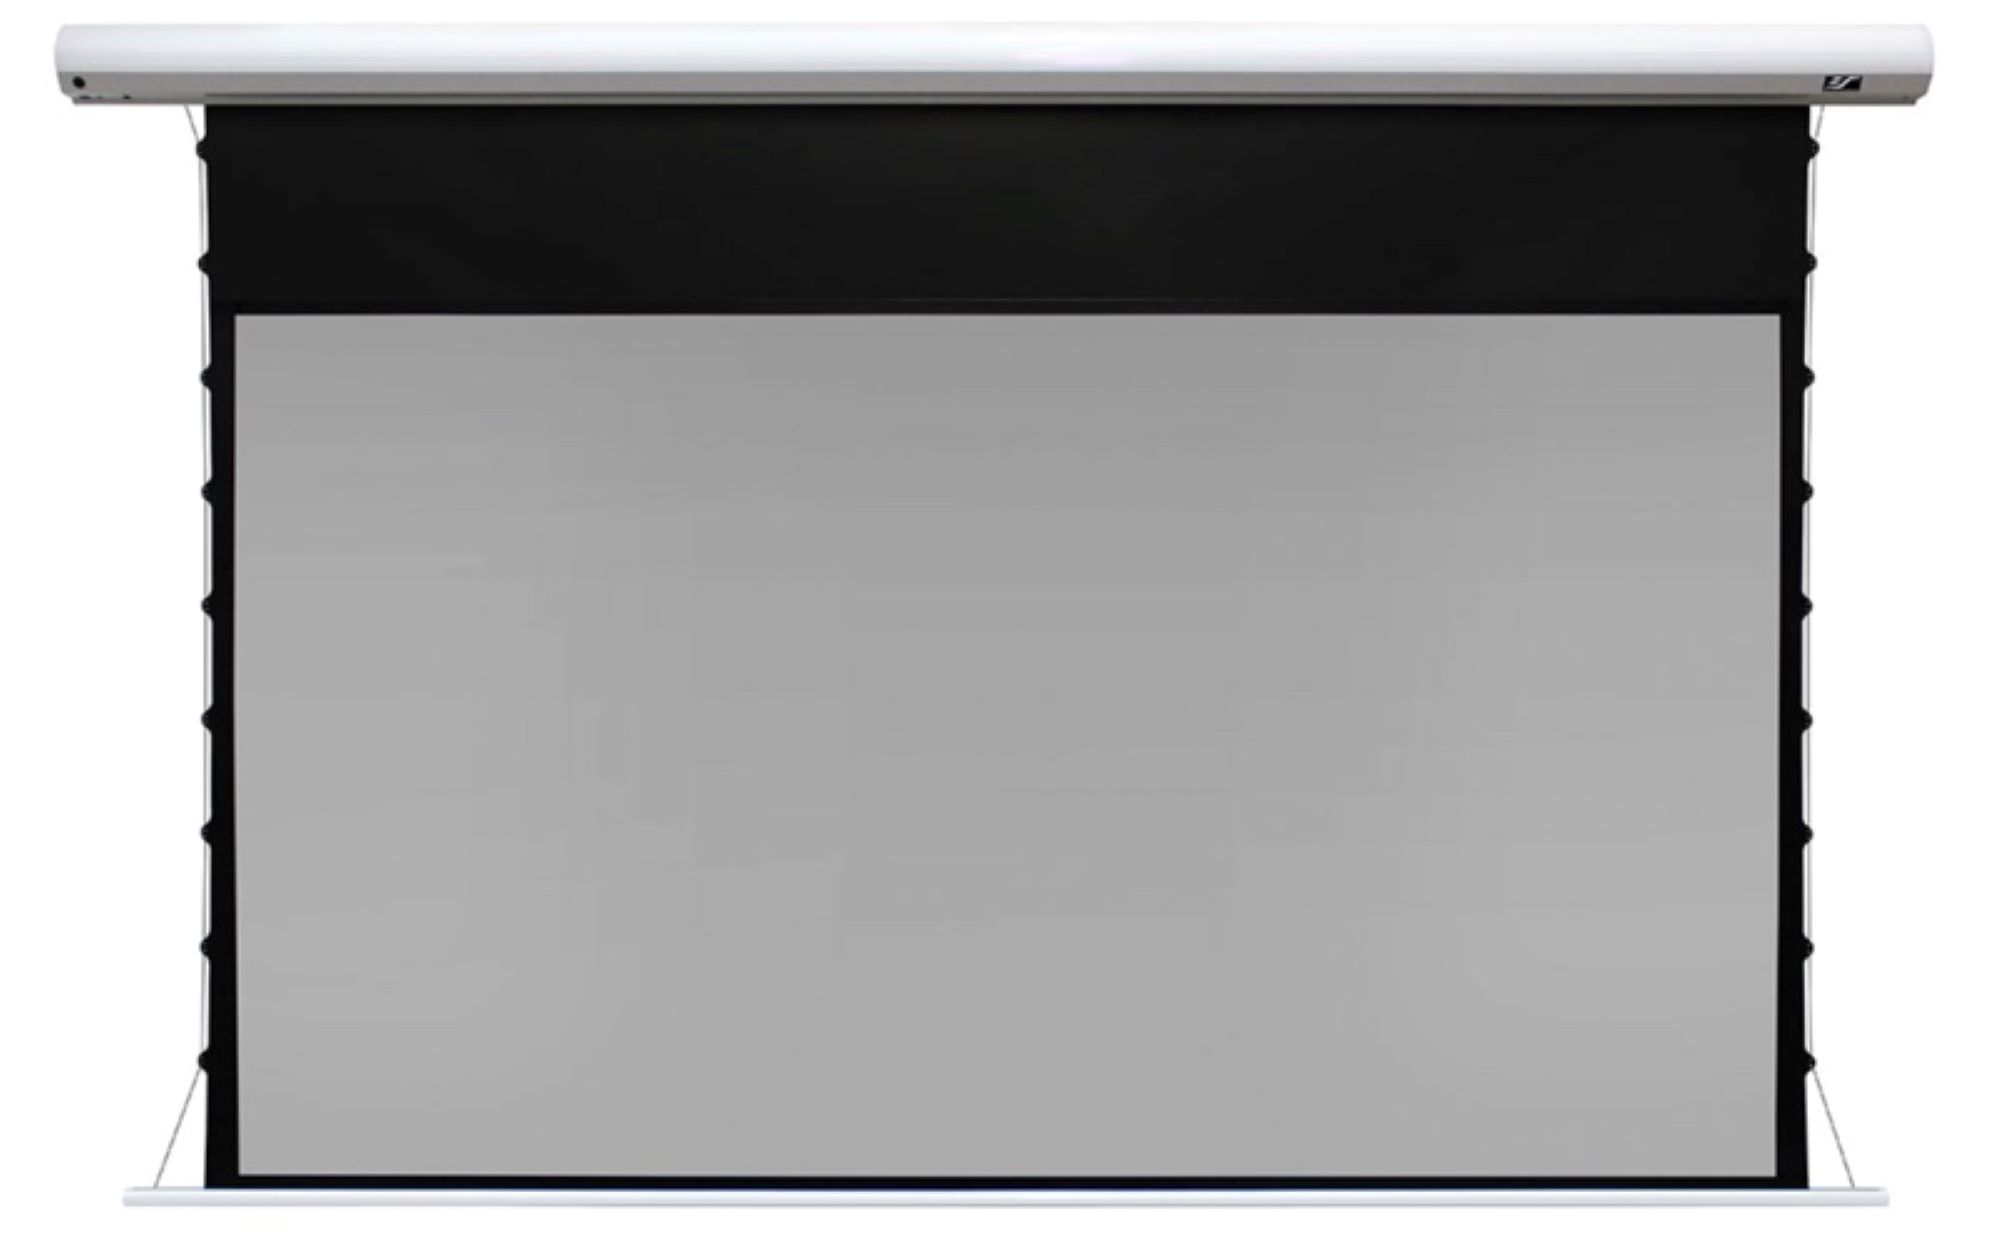 Моторизованные экраны Elite Screens SKT110XHD5-E12 натяжные экраны на раме elite screens r110wh1 110 16 9 131x234см cinewhite